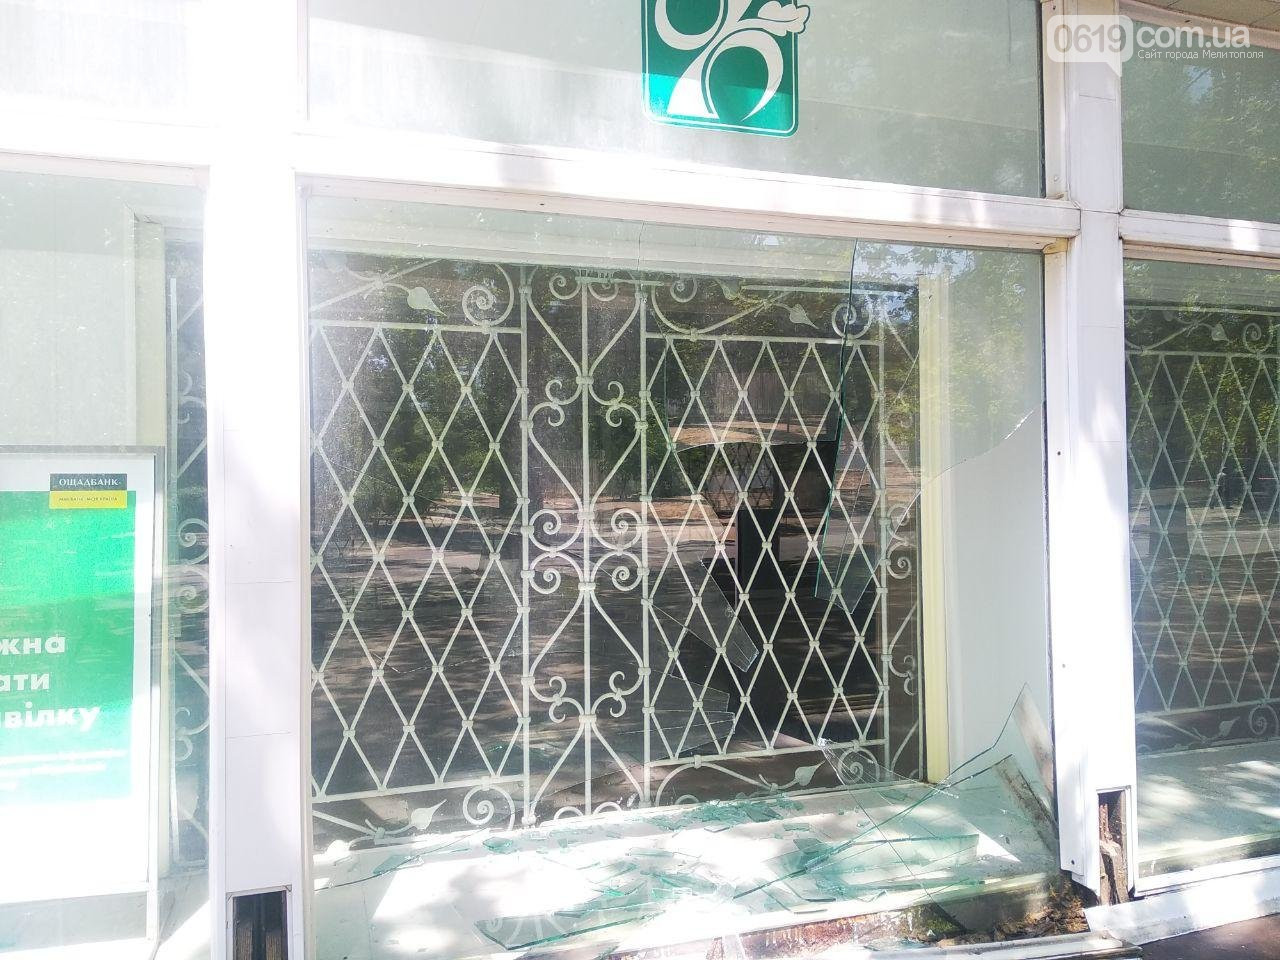 В Запорожской области неизвестные бросали кирпичи в окна банка (ФОТО)